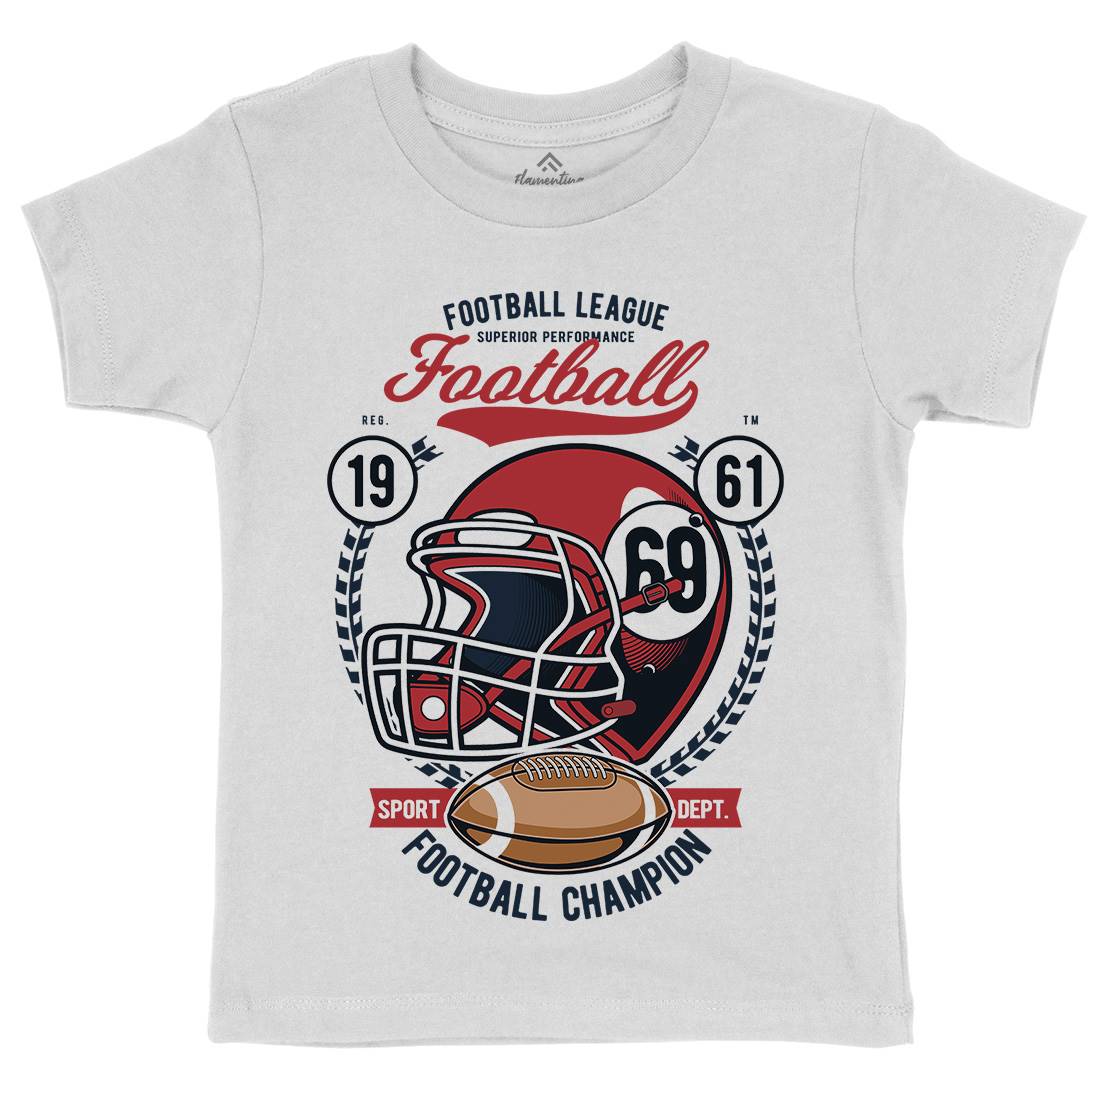 Football League Helmet Kids Organic Crew Neck T-Shirt Sport C362